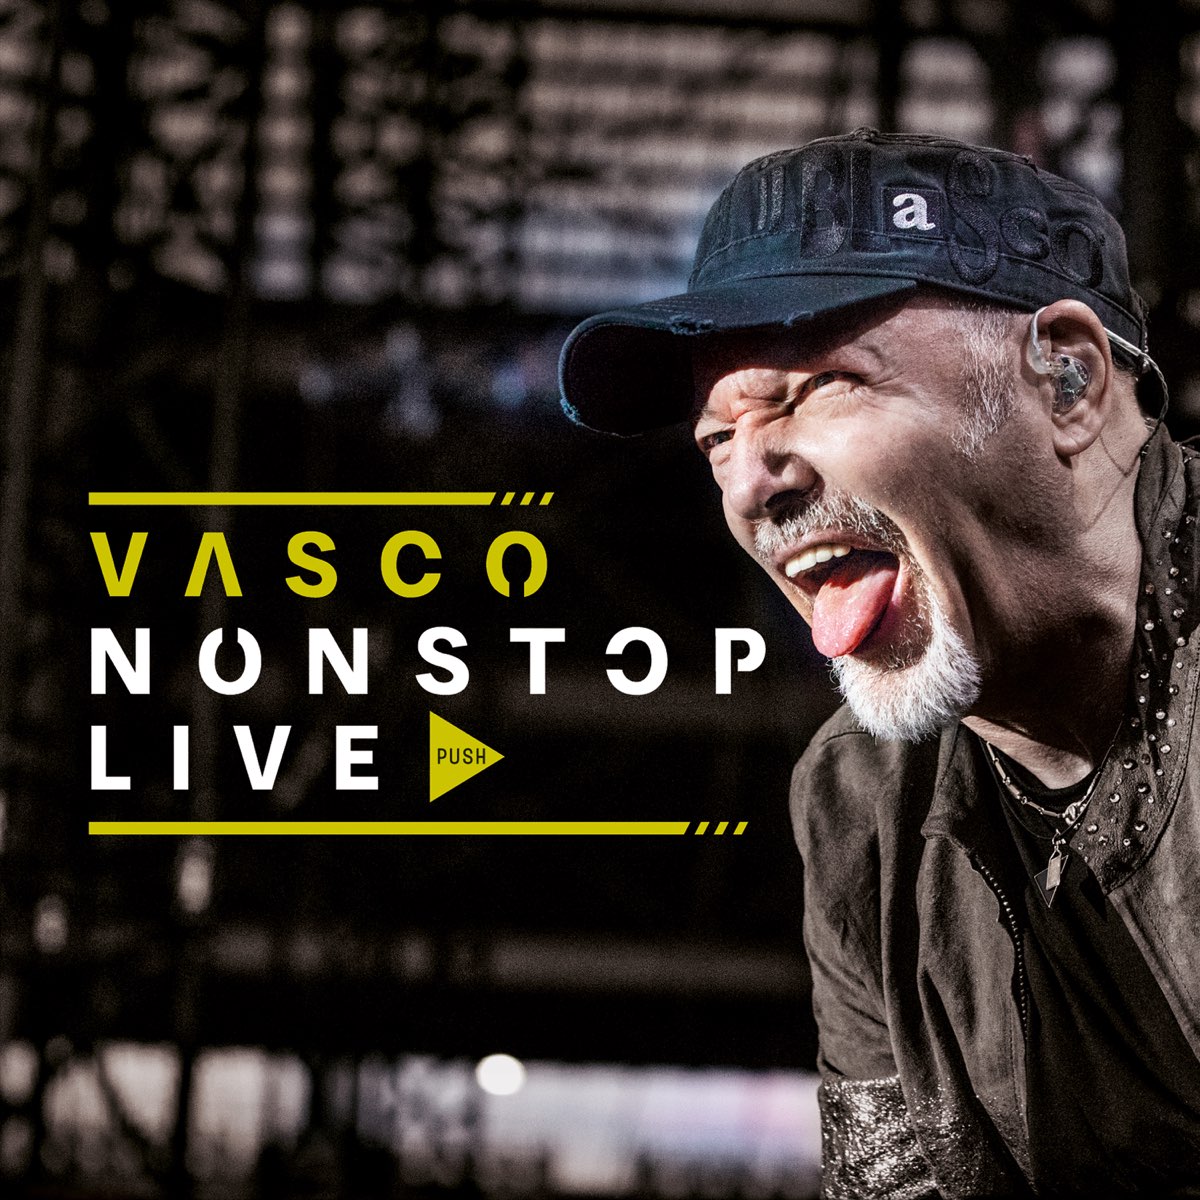 VASCO NONSTOP LIVE - Album di Vasco Rossi - Apple Music